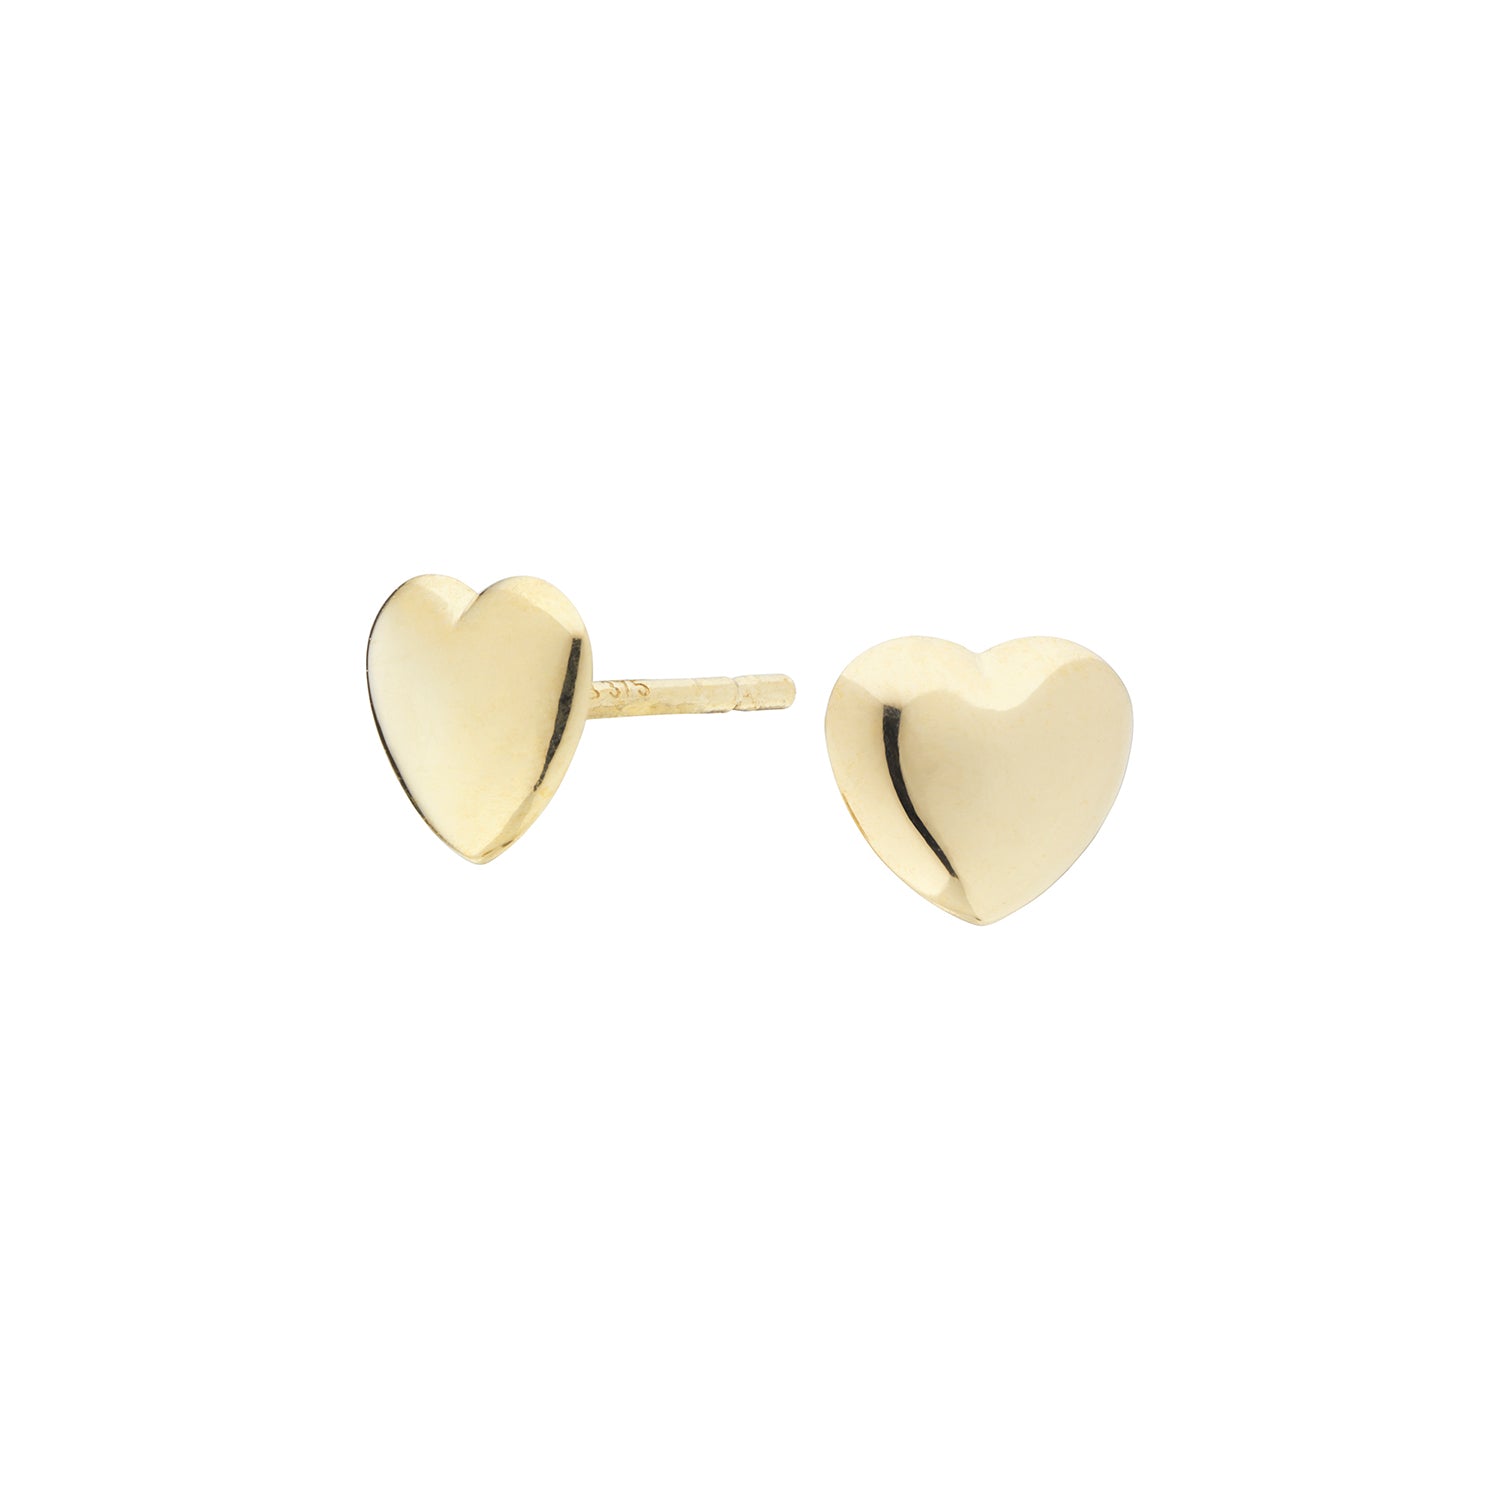 Billede af Vibholm Guld - Hjerte ørestikker 5 mm 9 kt